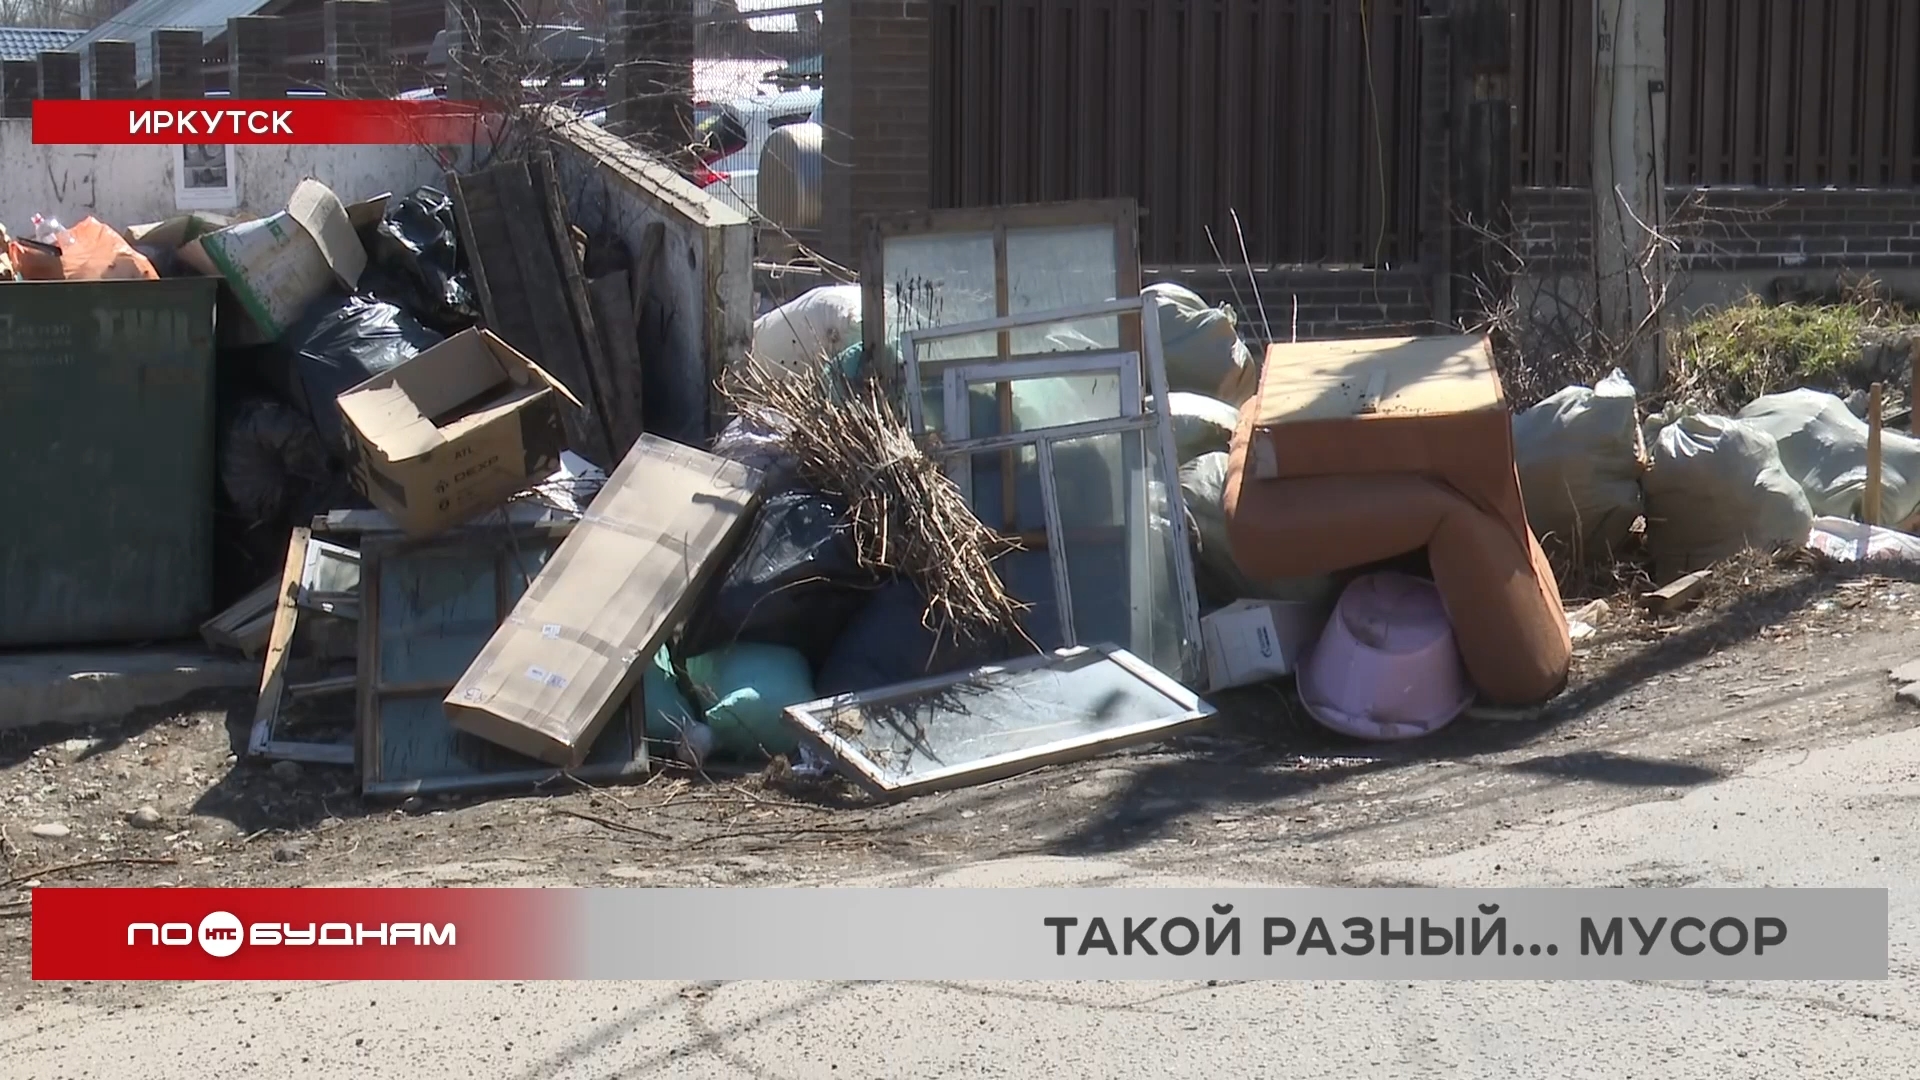 Строительный и крупный мусор скапливается на контейнерных площадках в Иркутске